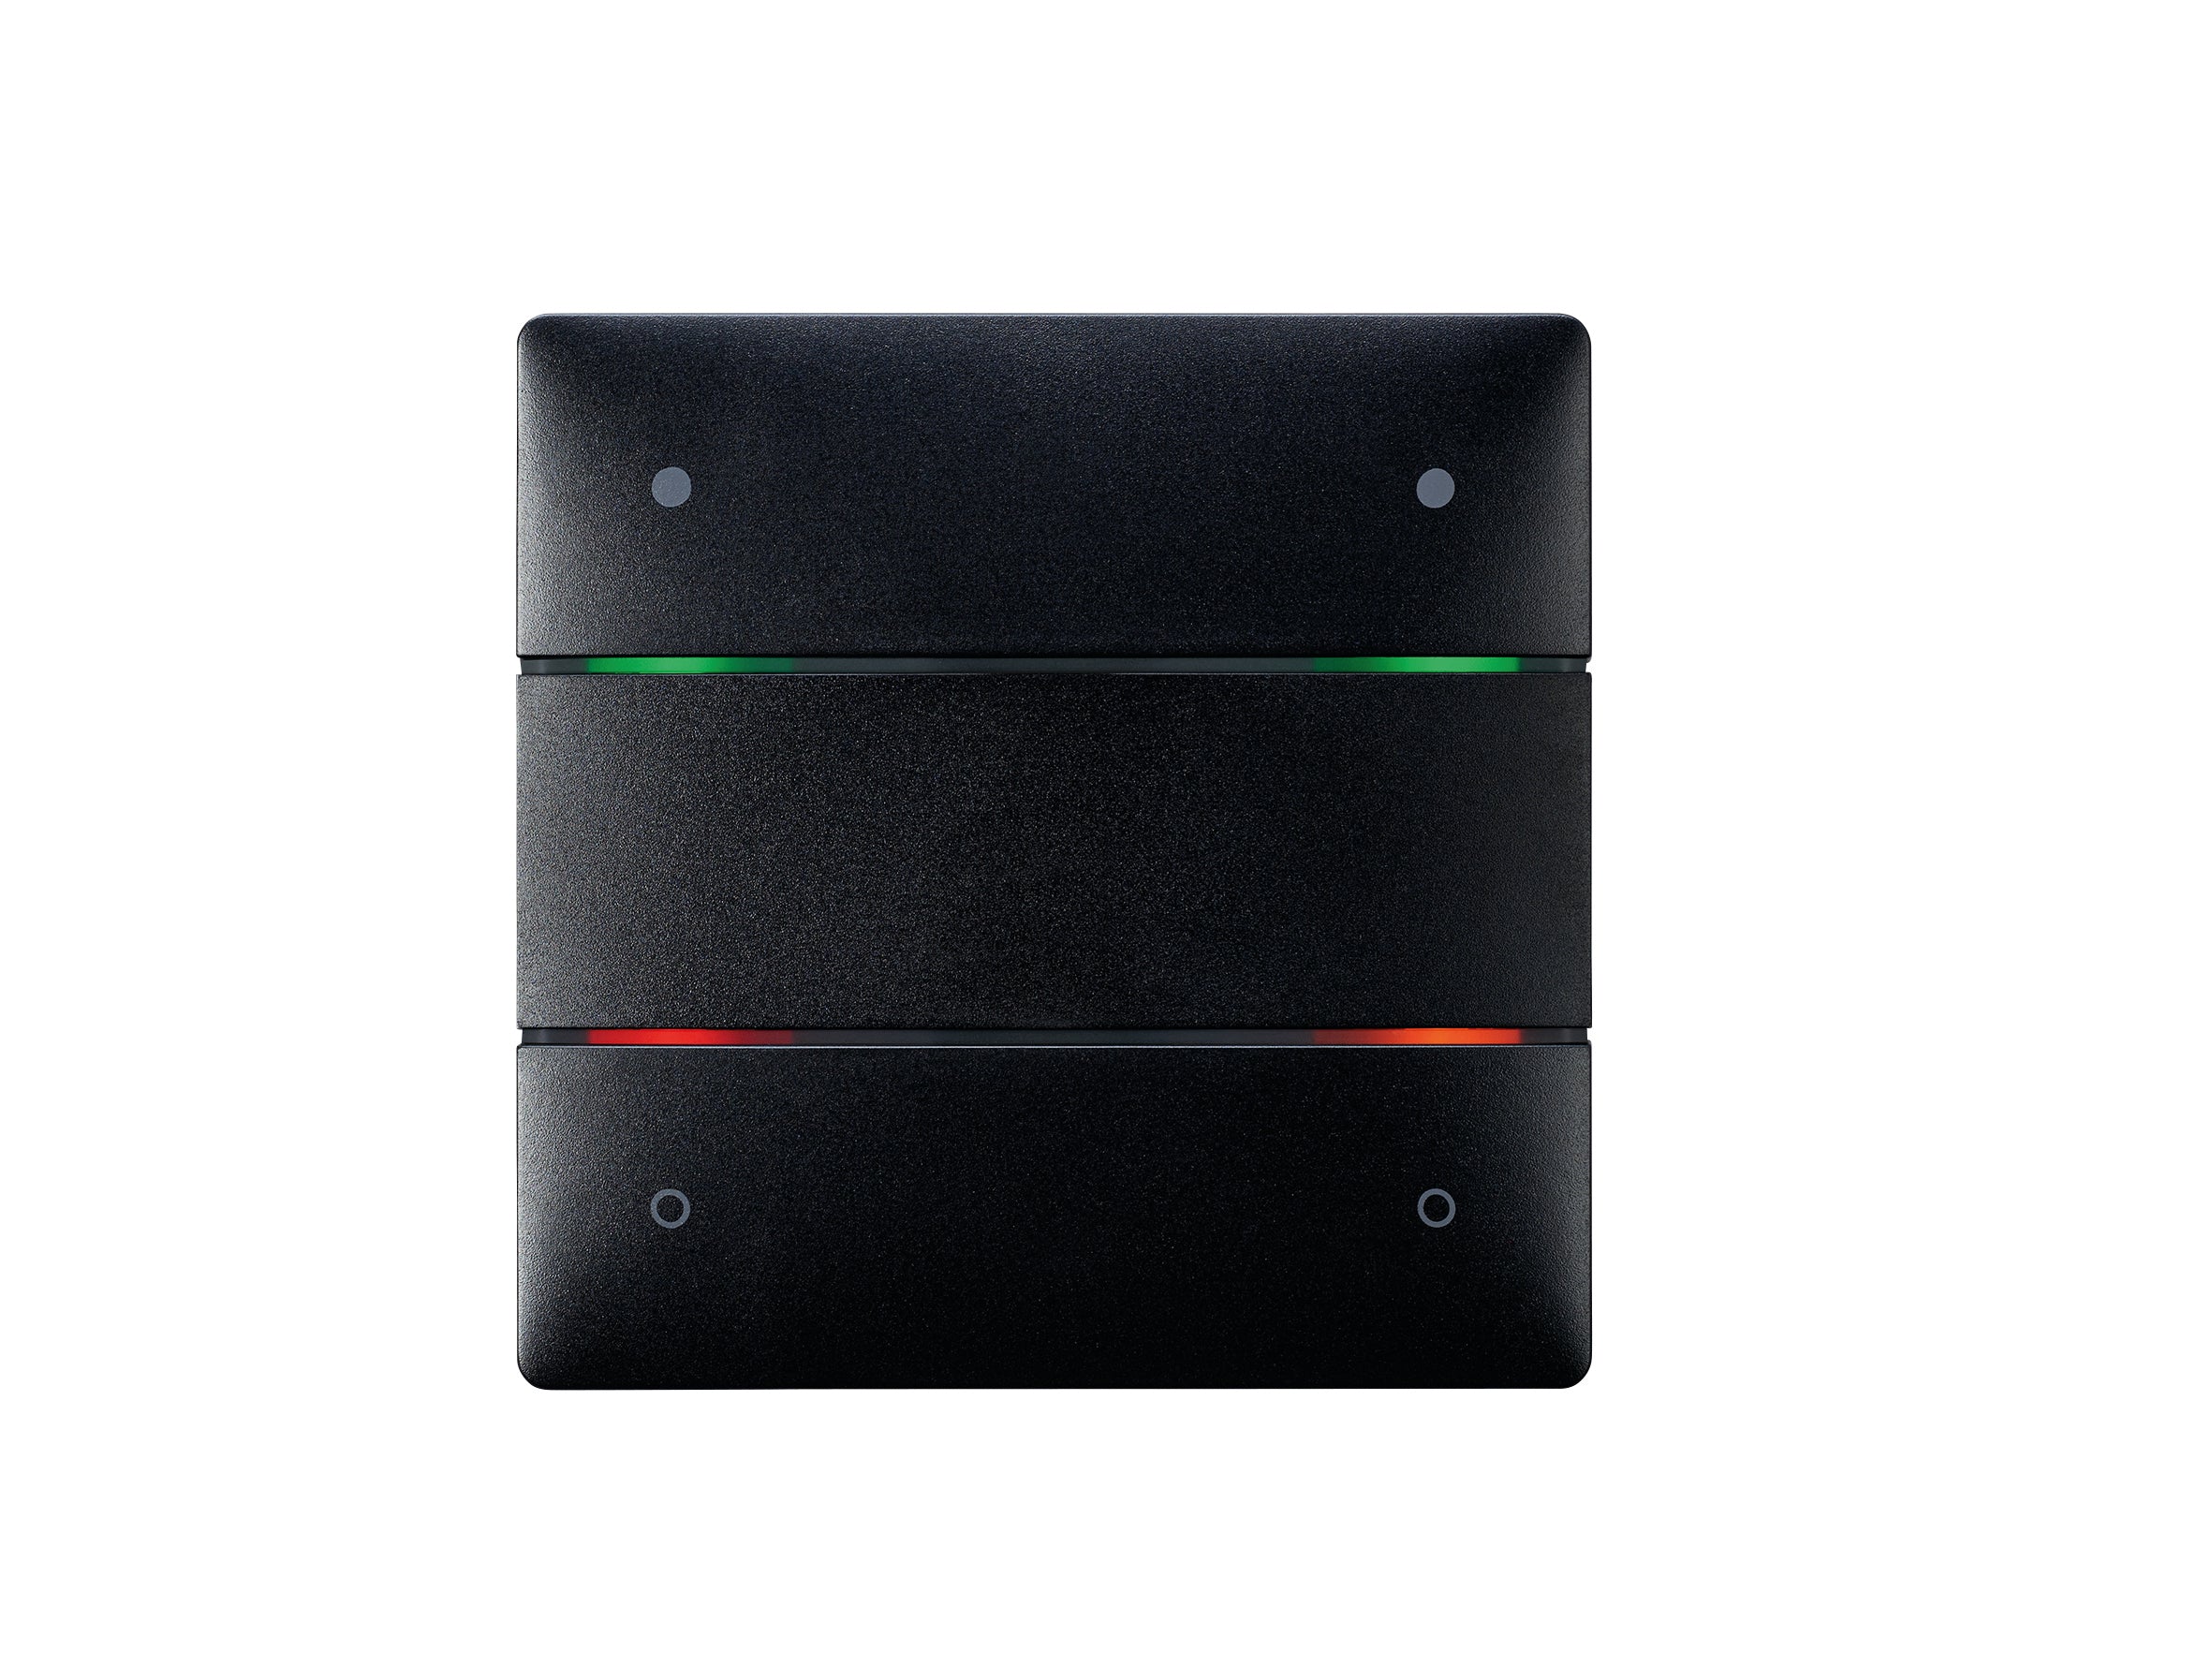 THEBEN LUXORliving-Tastsensor mit 4 Tasten und 4 Status-LEDs, integrierter Temperatursensor, Farbe schwarz